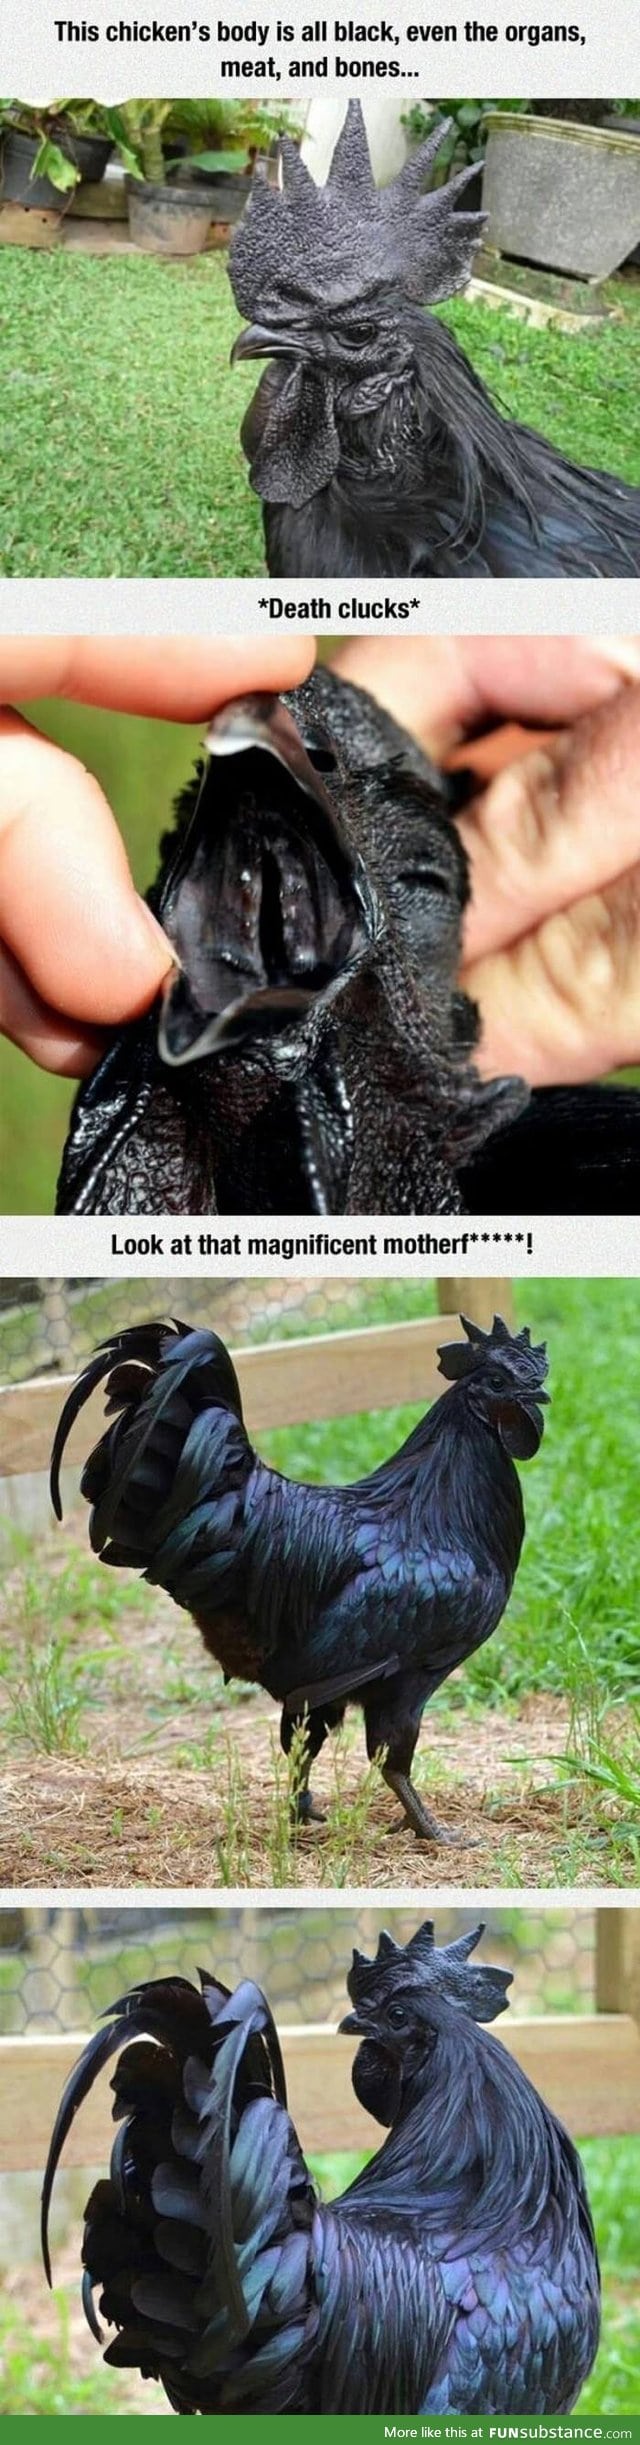 Black chicken